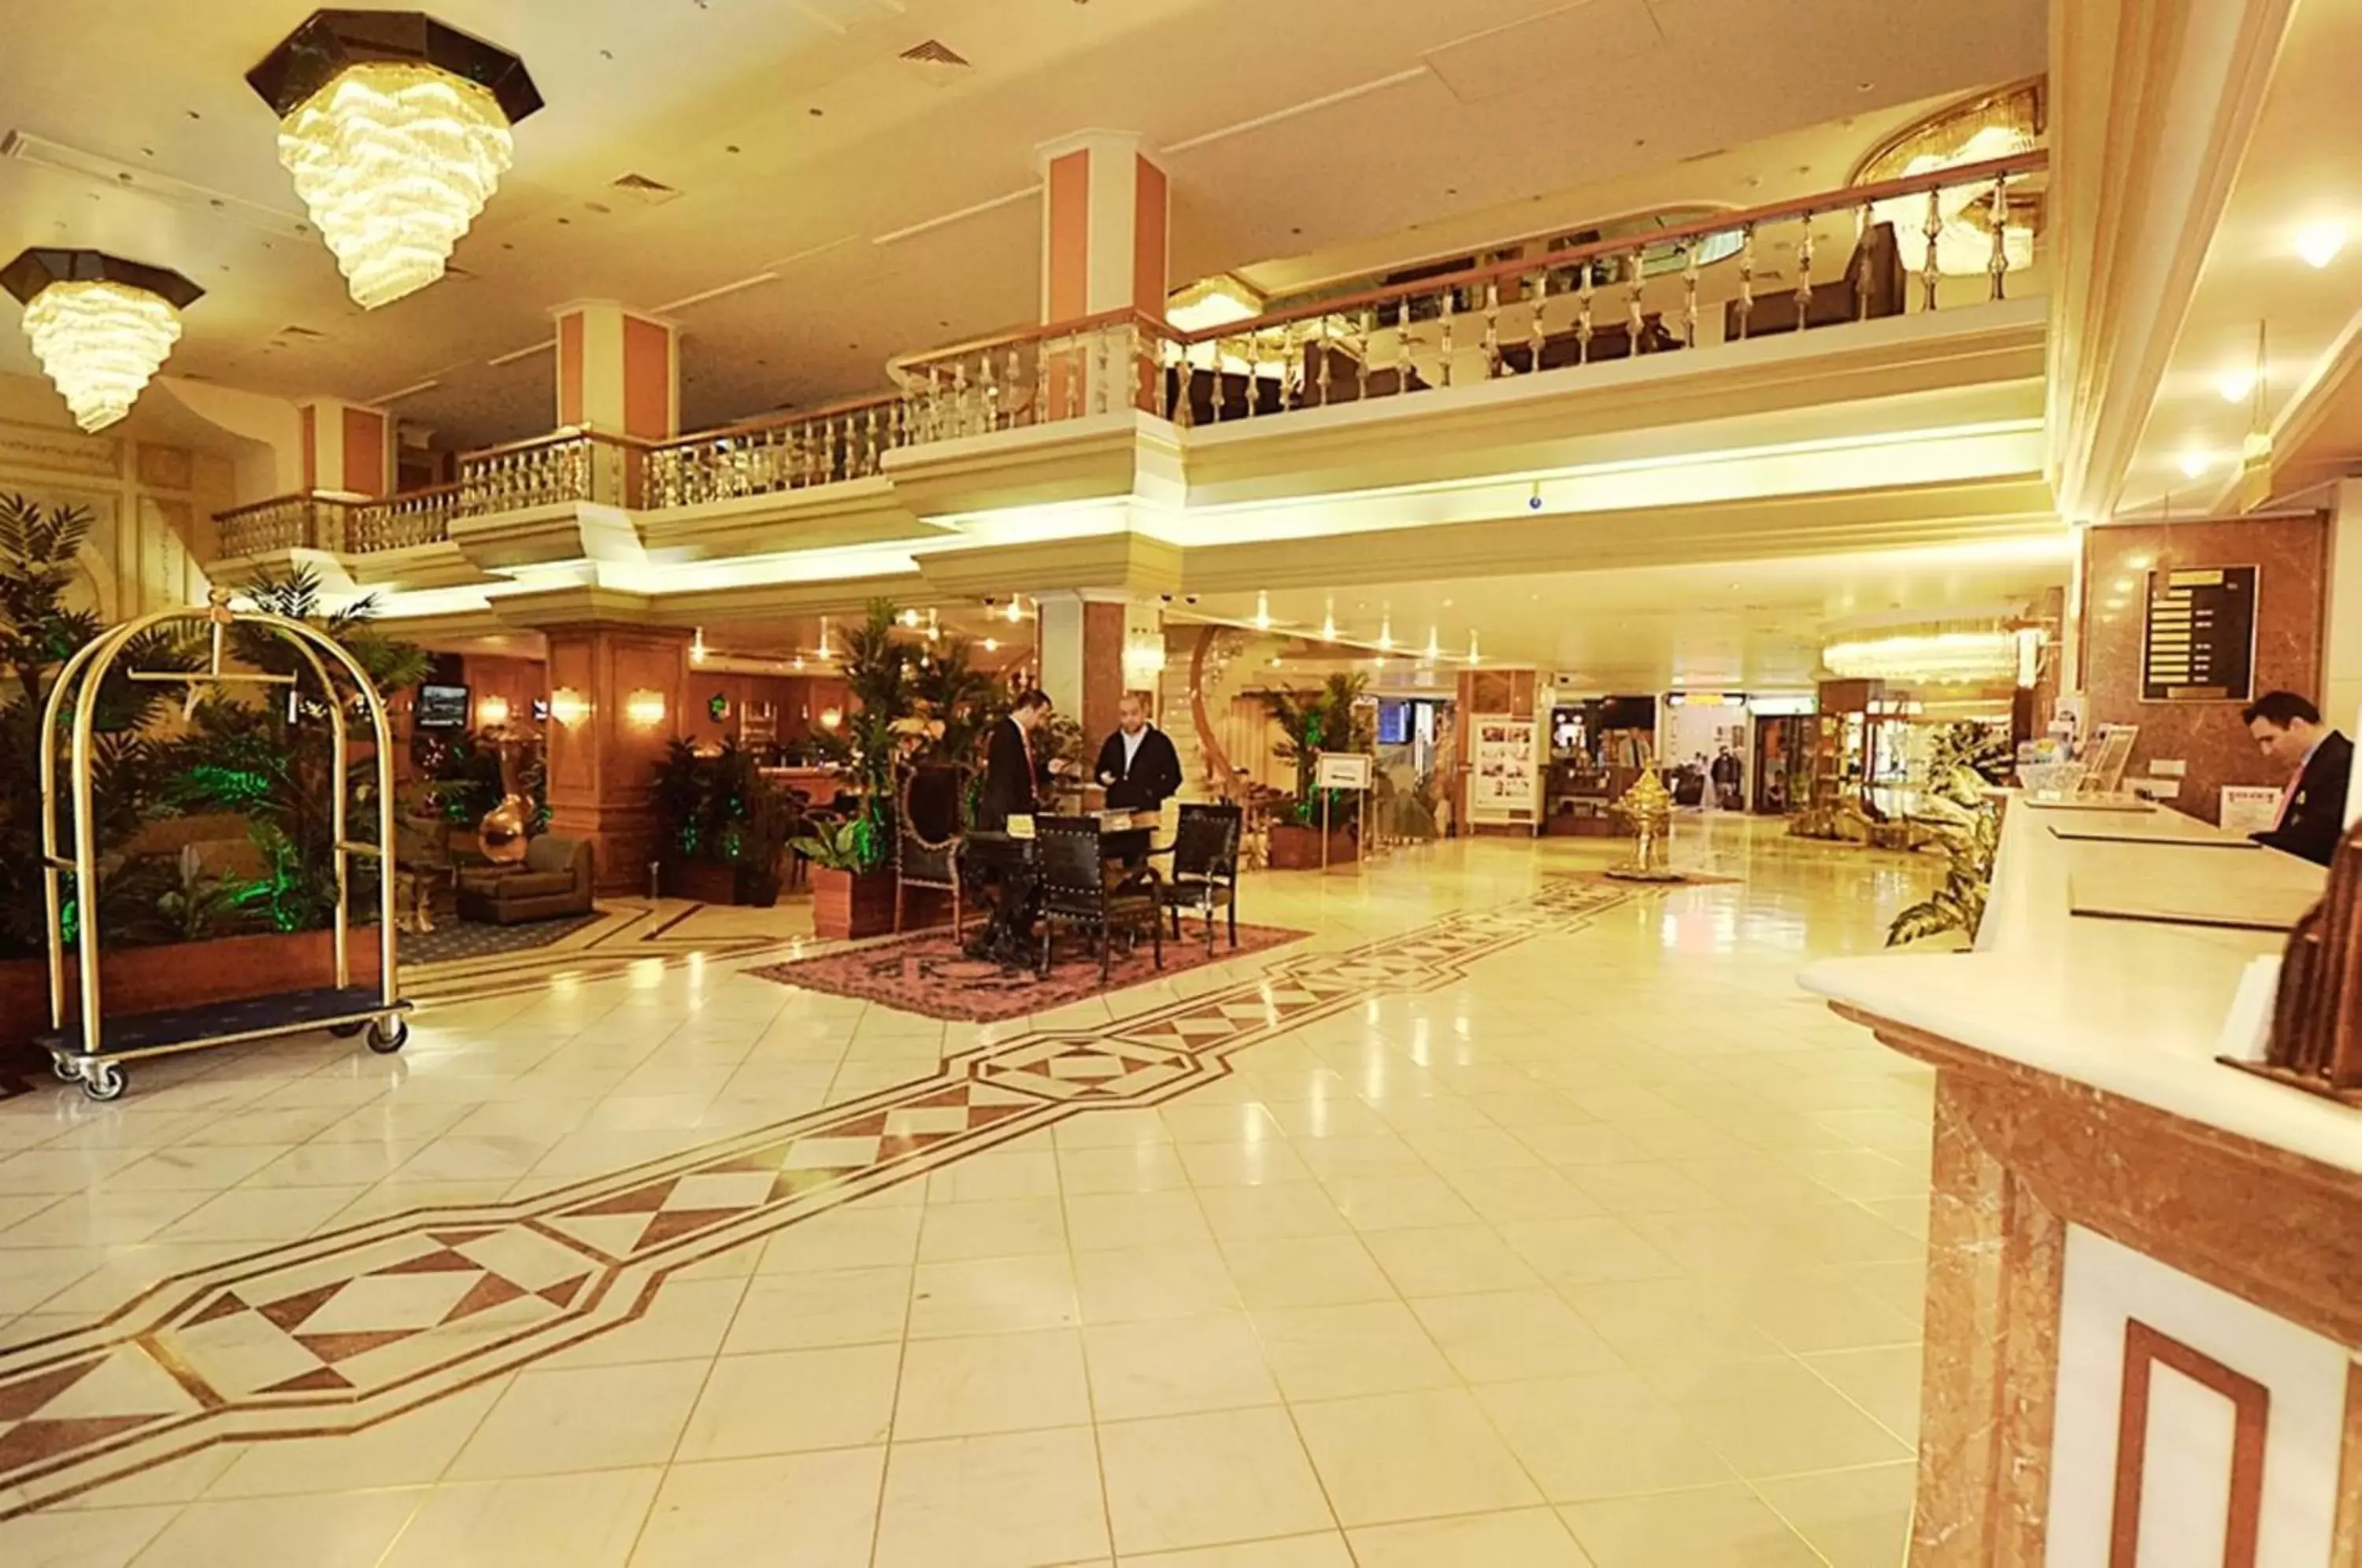 Lobby or reception in Akgun Istanbul Hotel